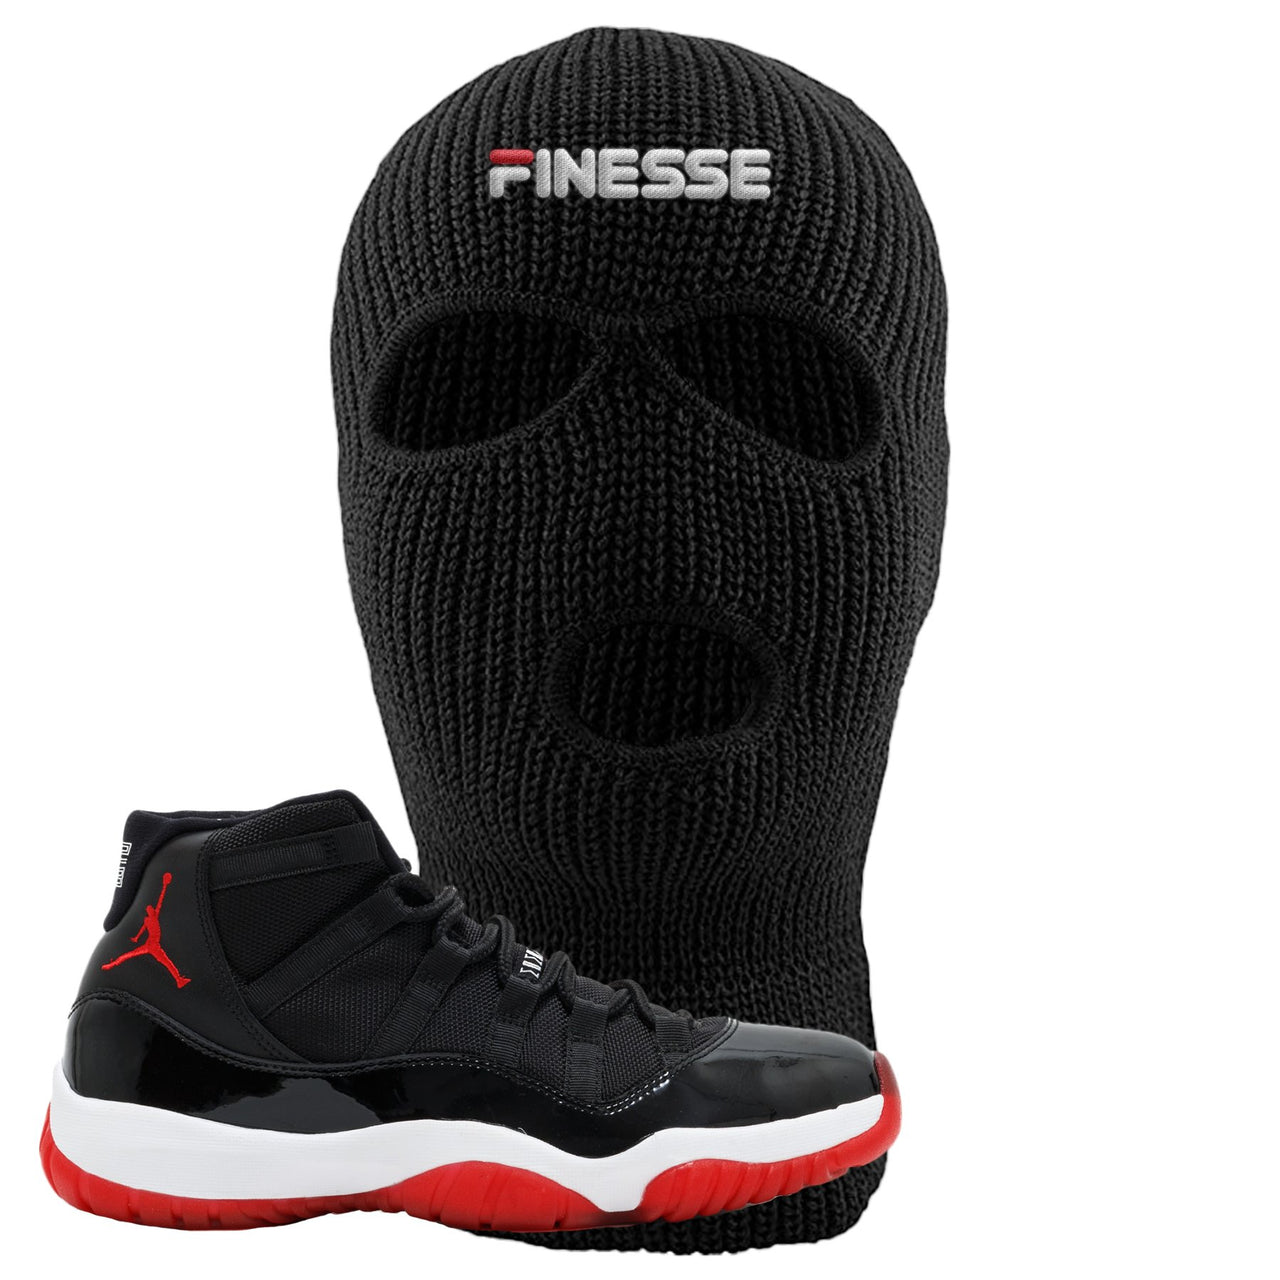 Jordan 11 Bred Finesse Black Sneaker Hook Up Ski Mask